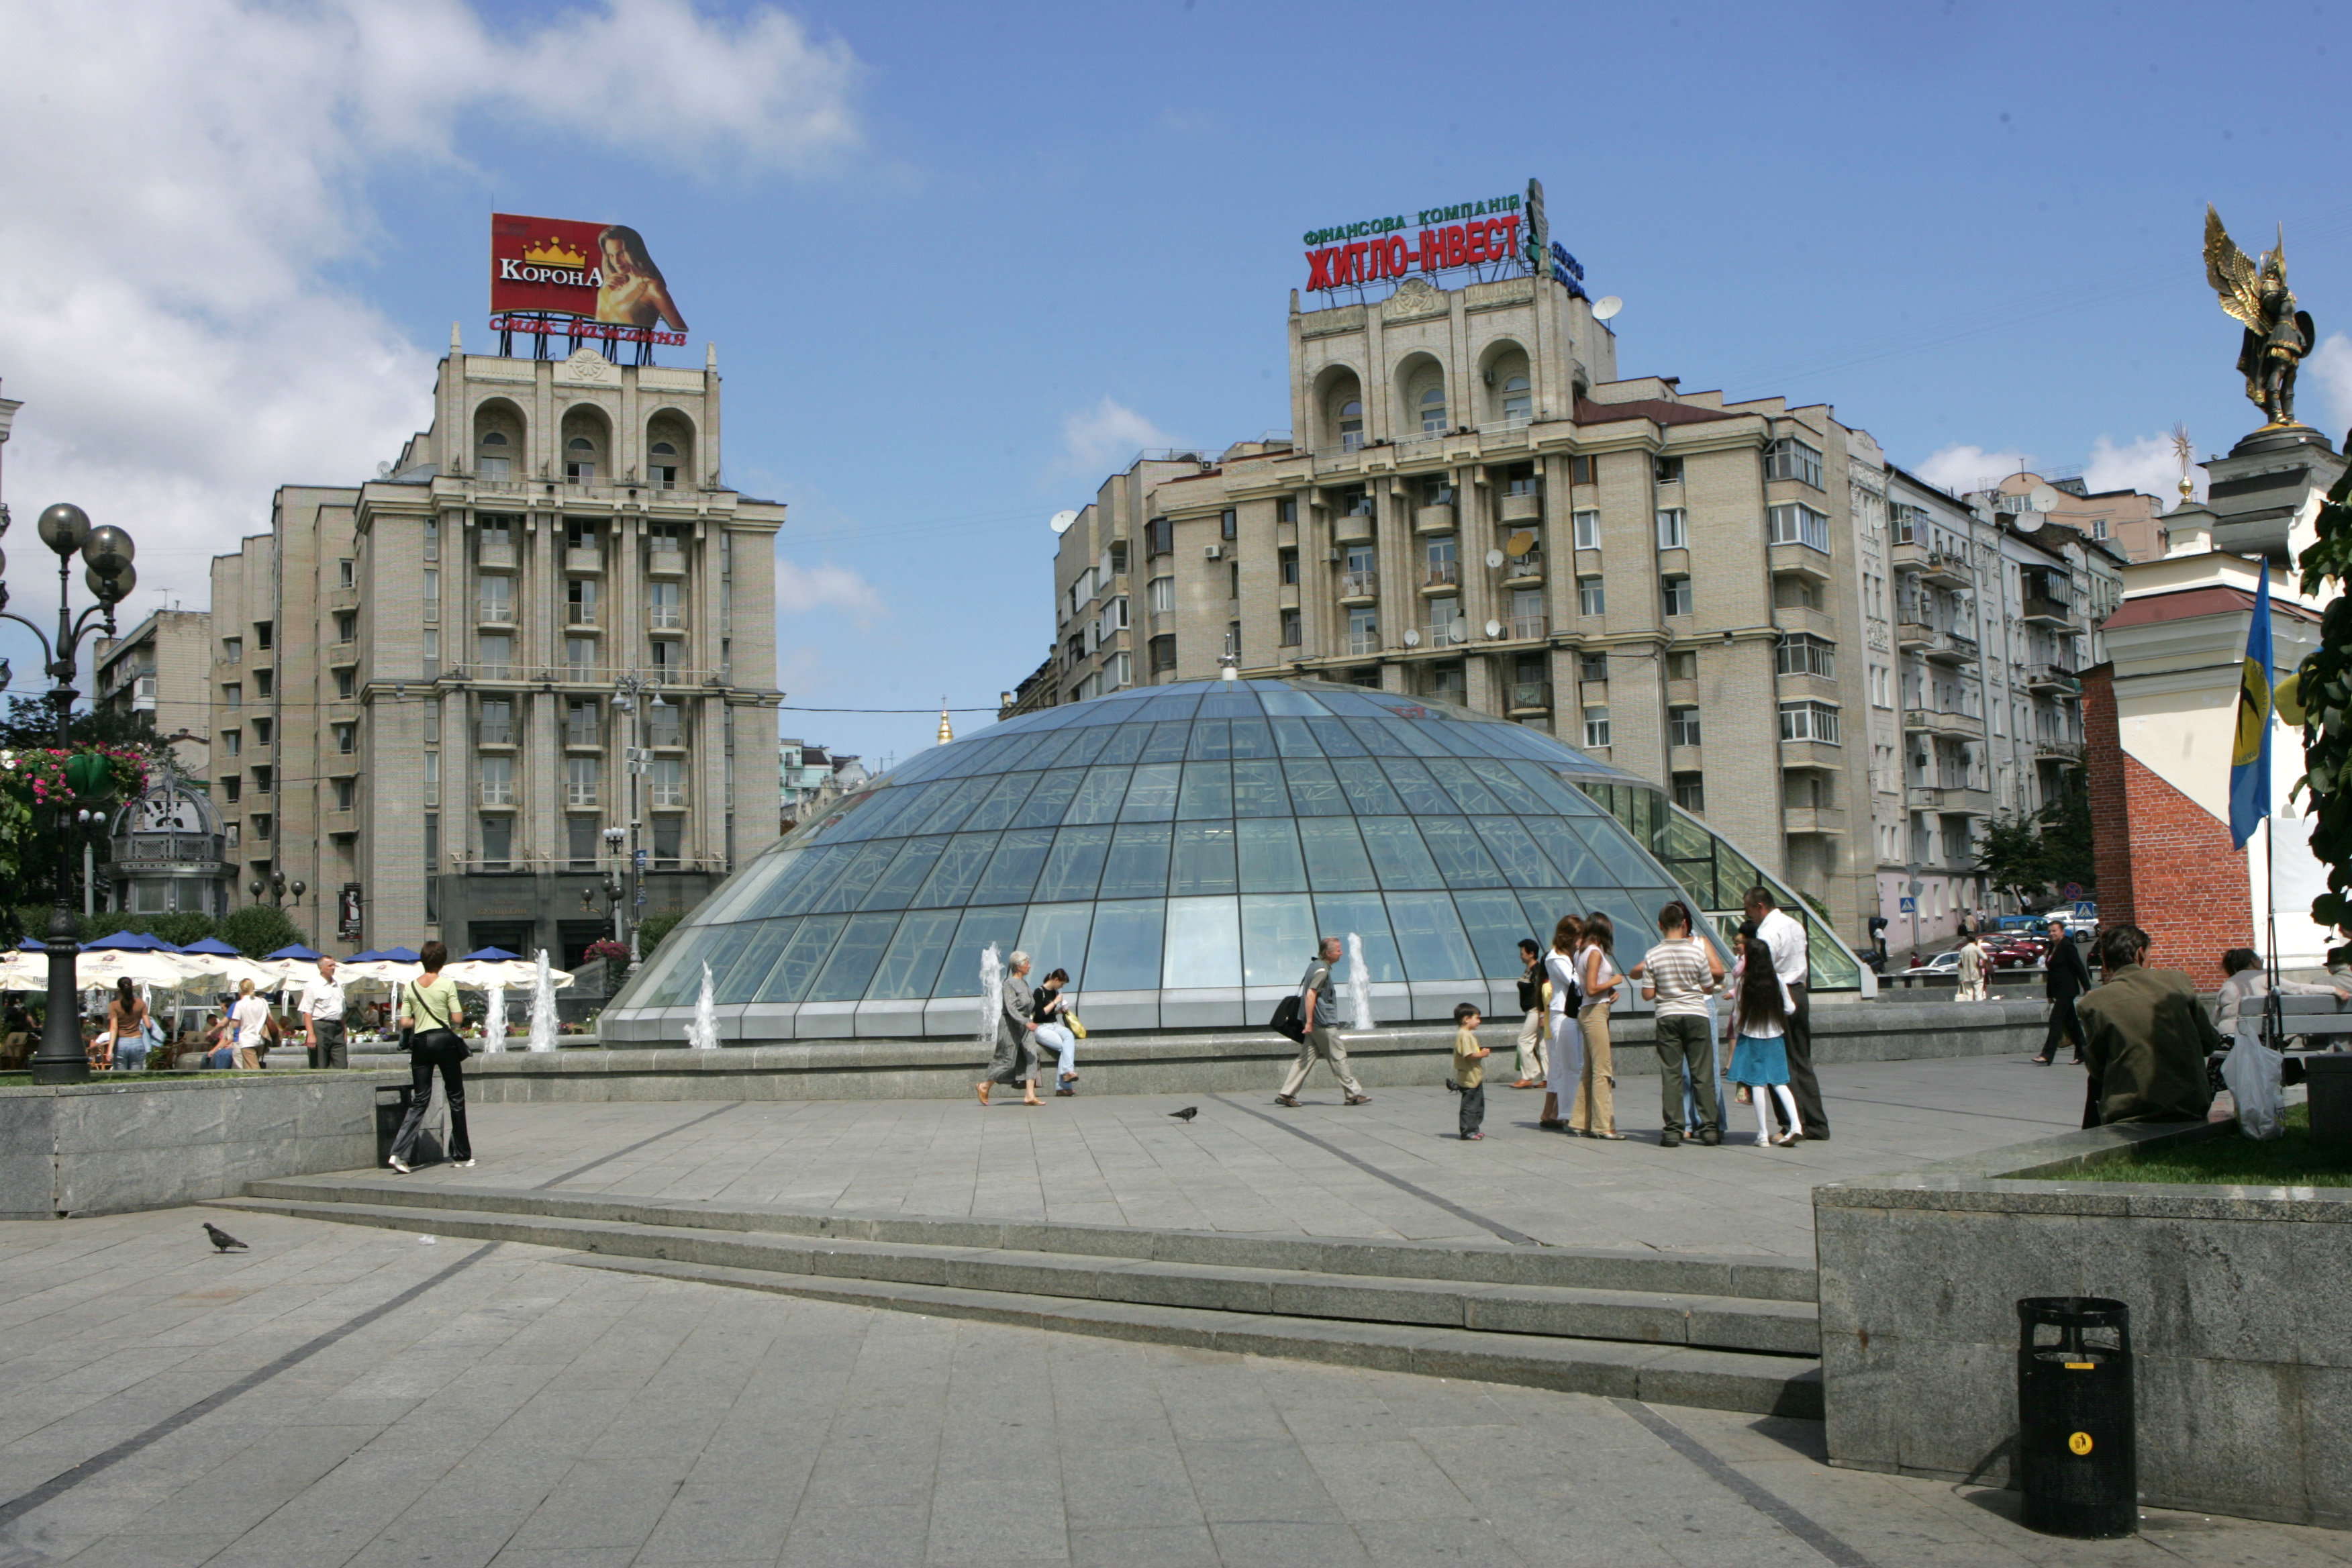 Kijevas – Ukrainos sostinė. Tai didžiausias milijoninis miestas, įsikūręs šiaurinėje šalies dalyje prie Dniepro upės bei septintas pagal dydį Europos žemyno miestas.T.Bauro nuotr.